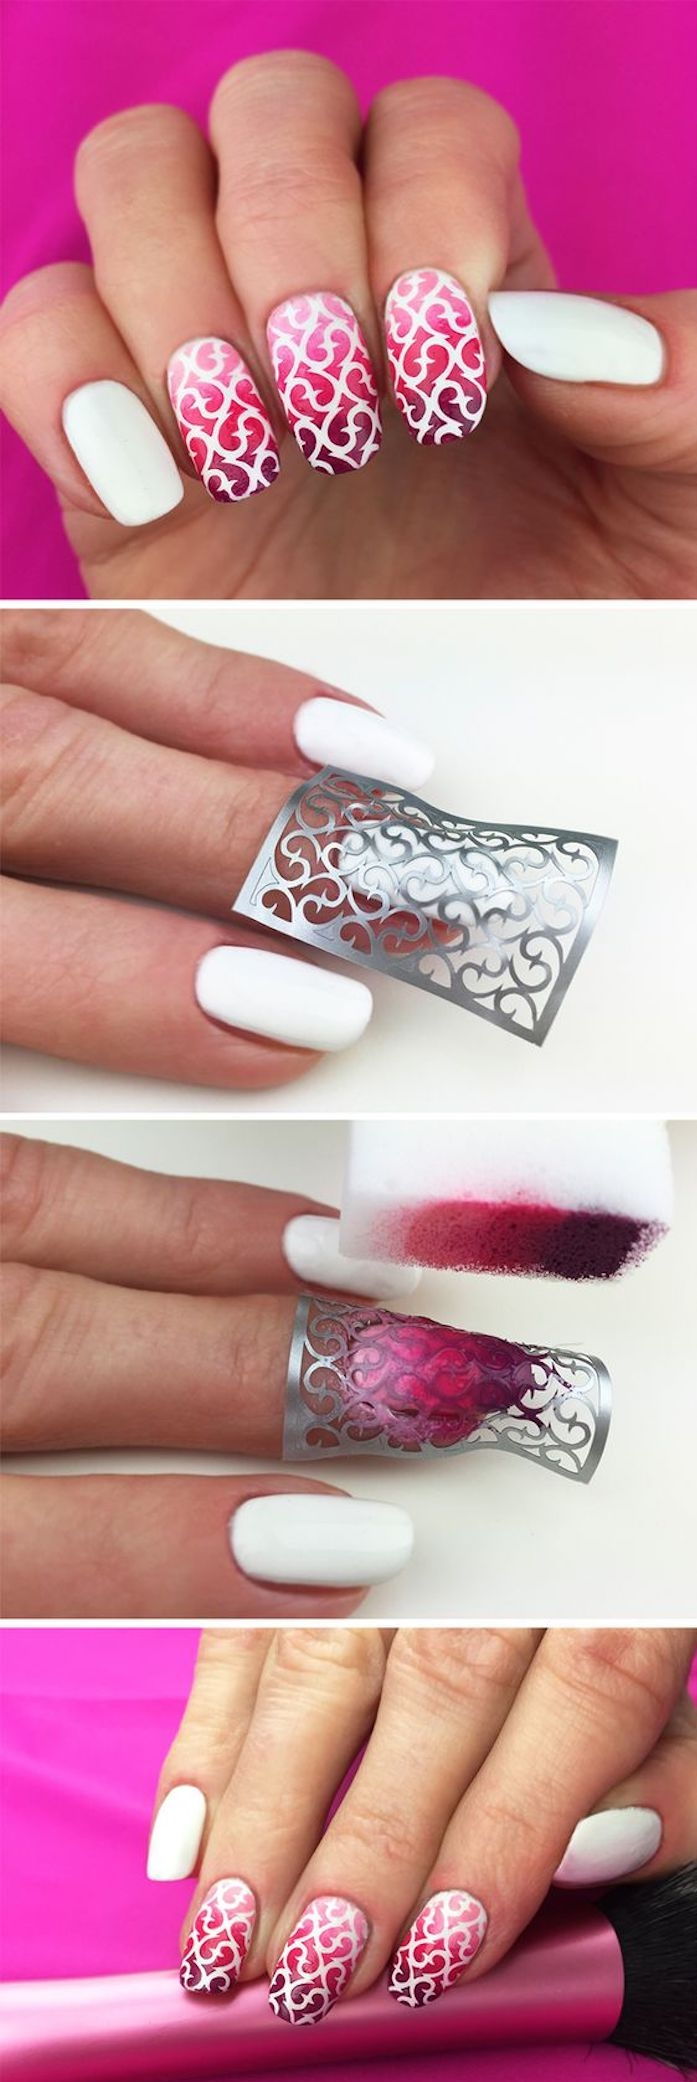 nagel design galleri, långa naglar i ombre look, nagel design i rosa, vit och lila